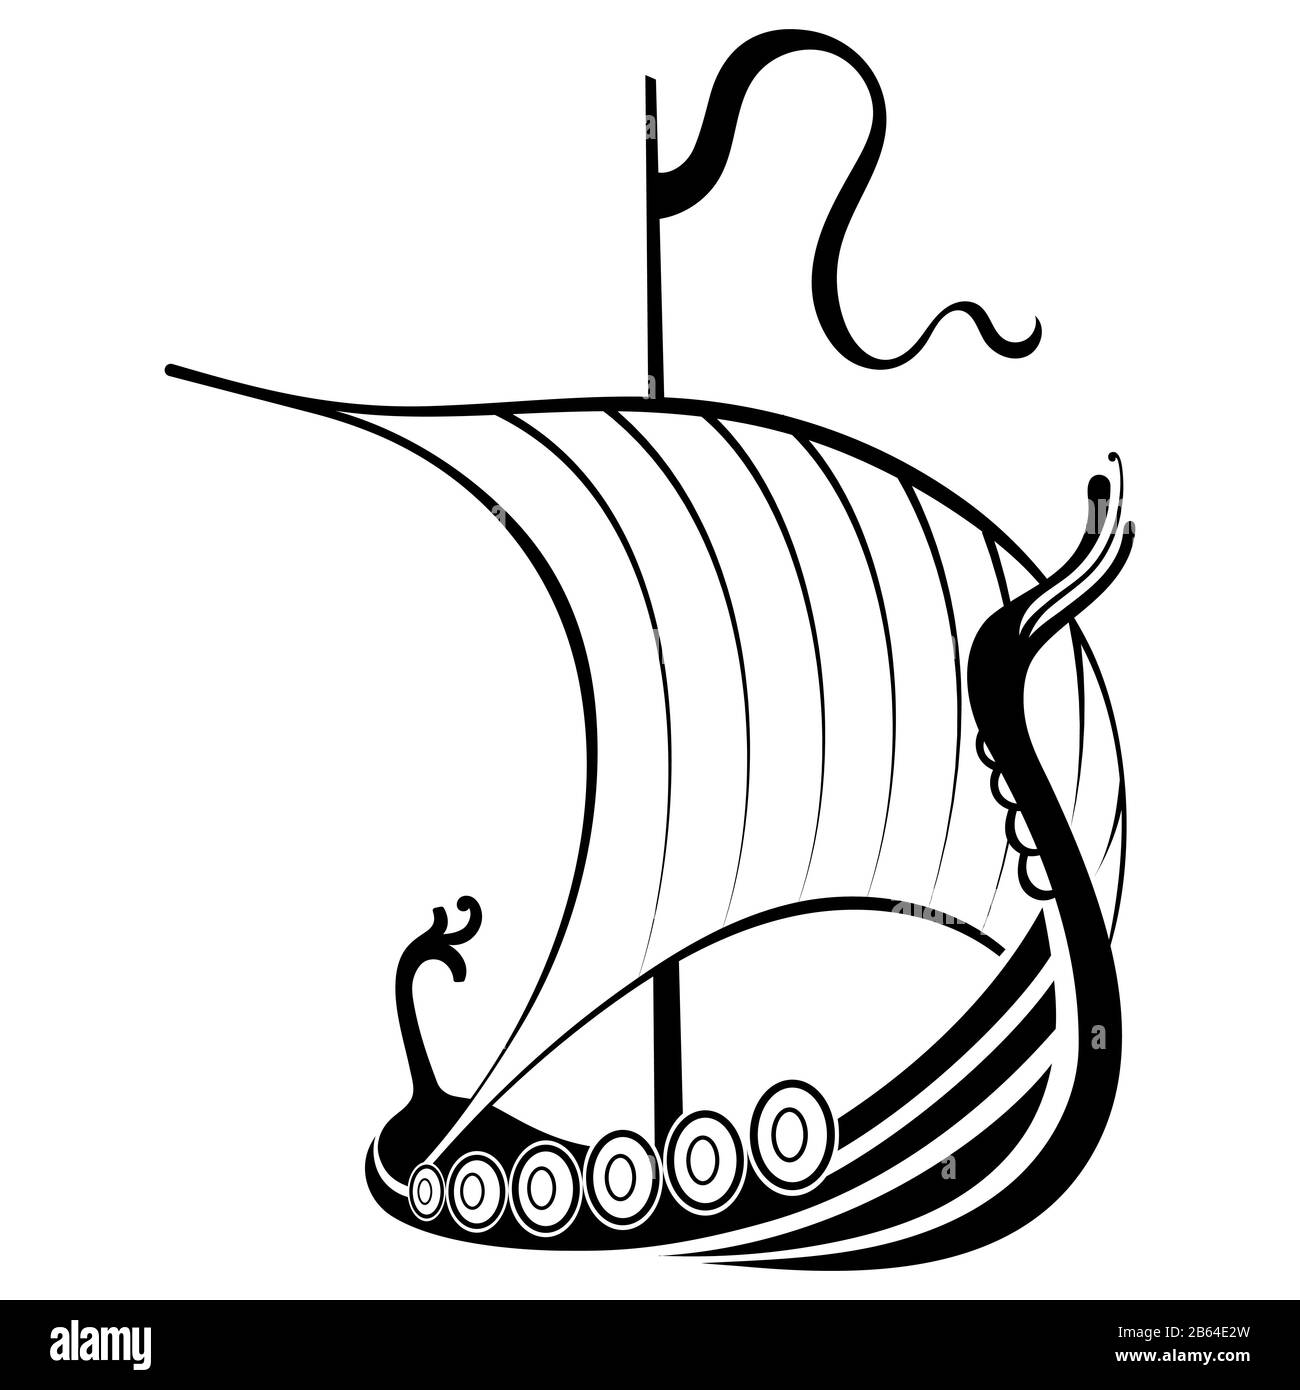 Viking ship sailing. Drakkar with a dragons head. Warship of the Vikings Stock Vector